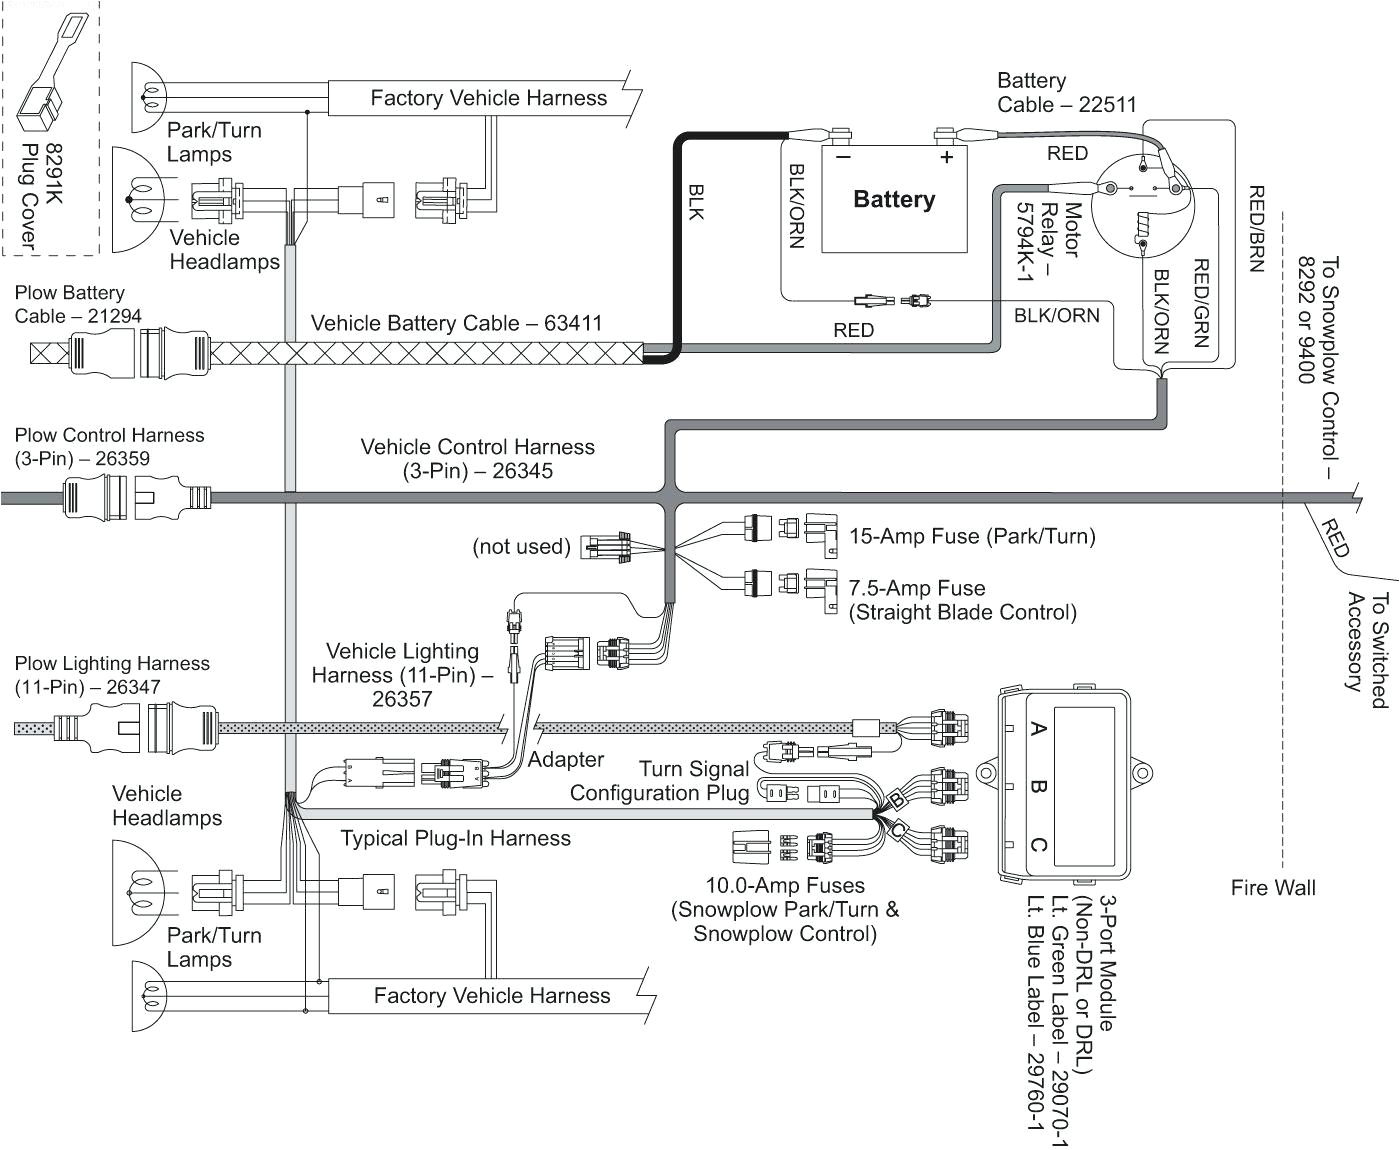 onan engine wiring diagram blog wiring diagram onan engine wiring